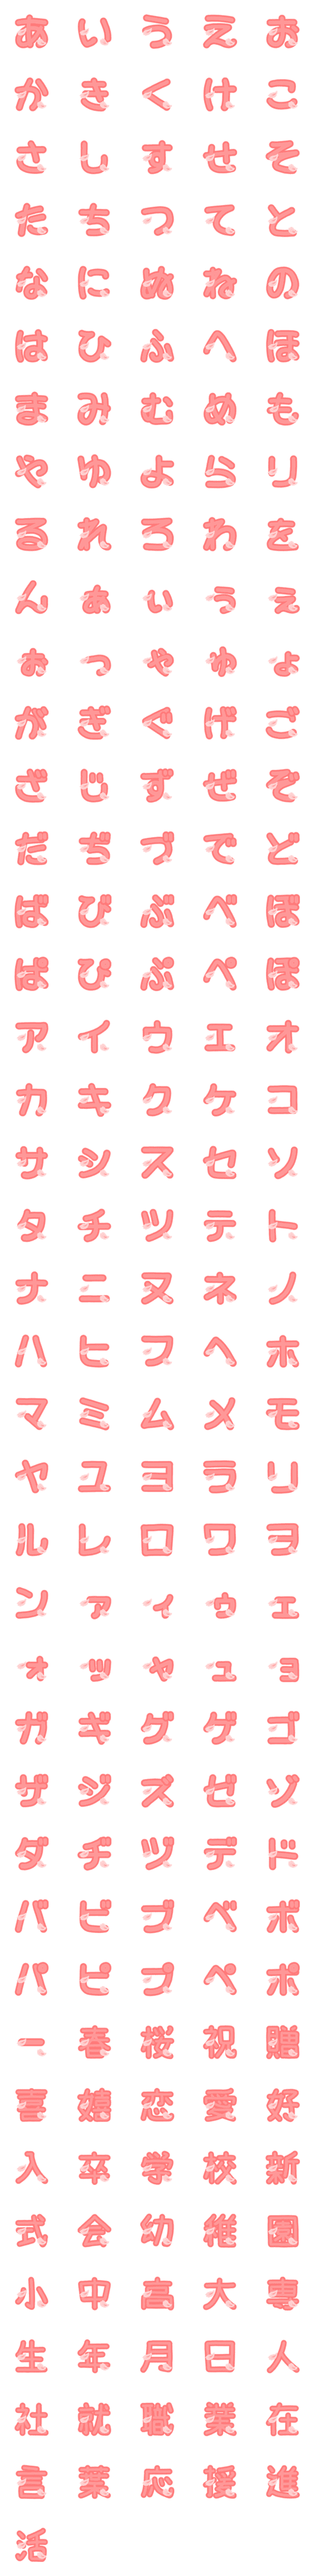 [LINE絵文字]桜の花びら舞い散る動くひらカタ漢★絵文字の画像一覧